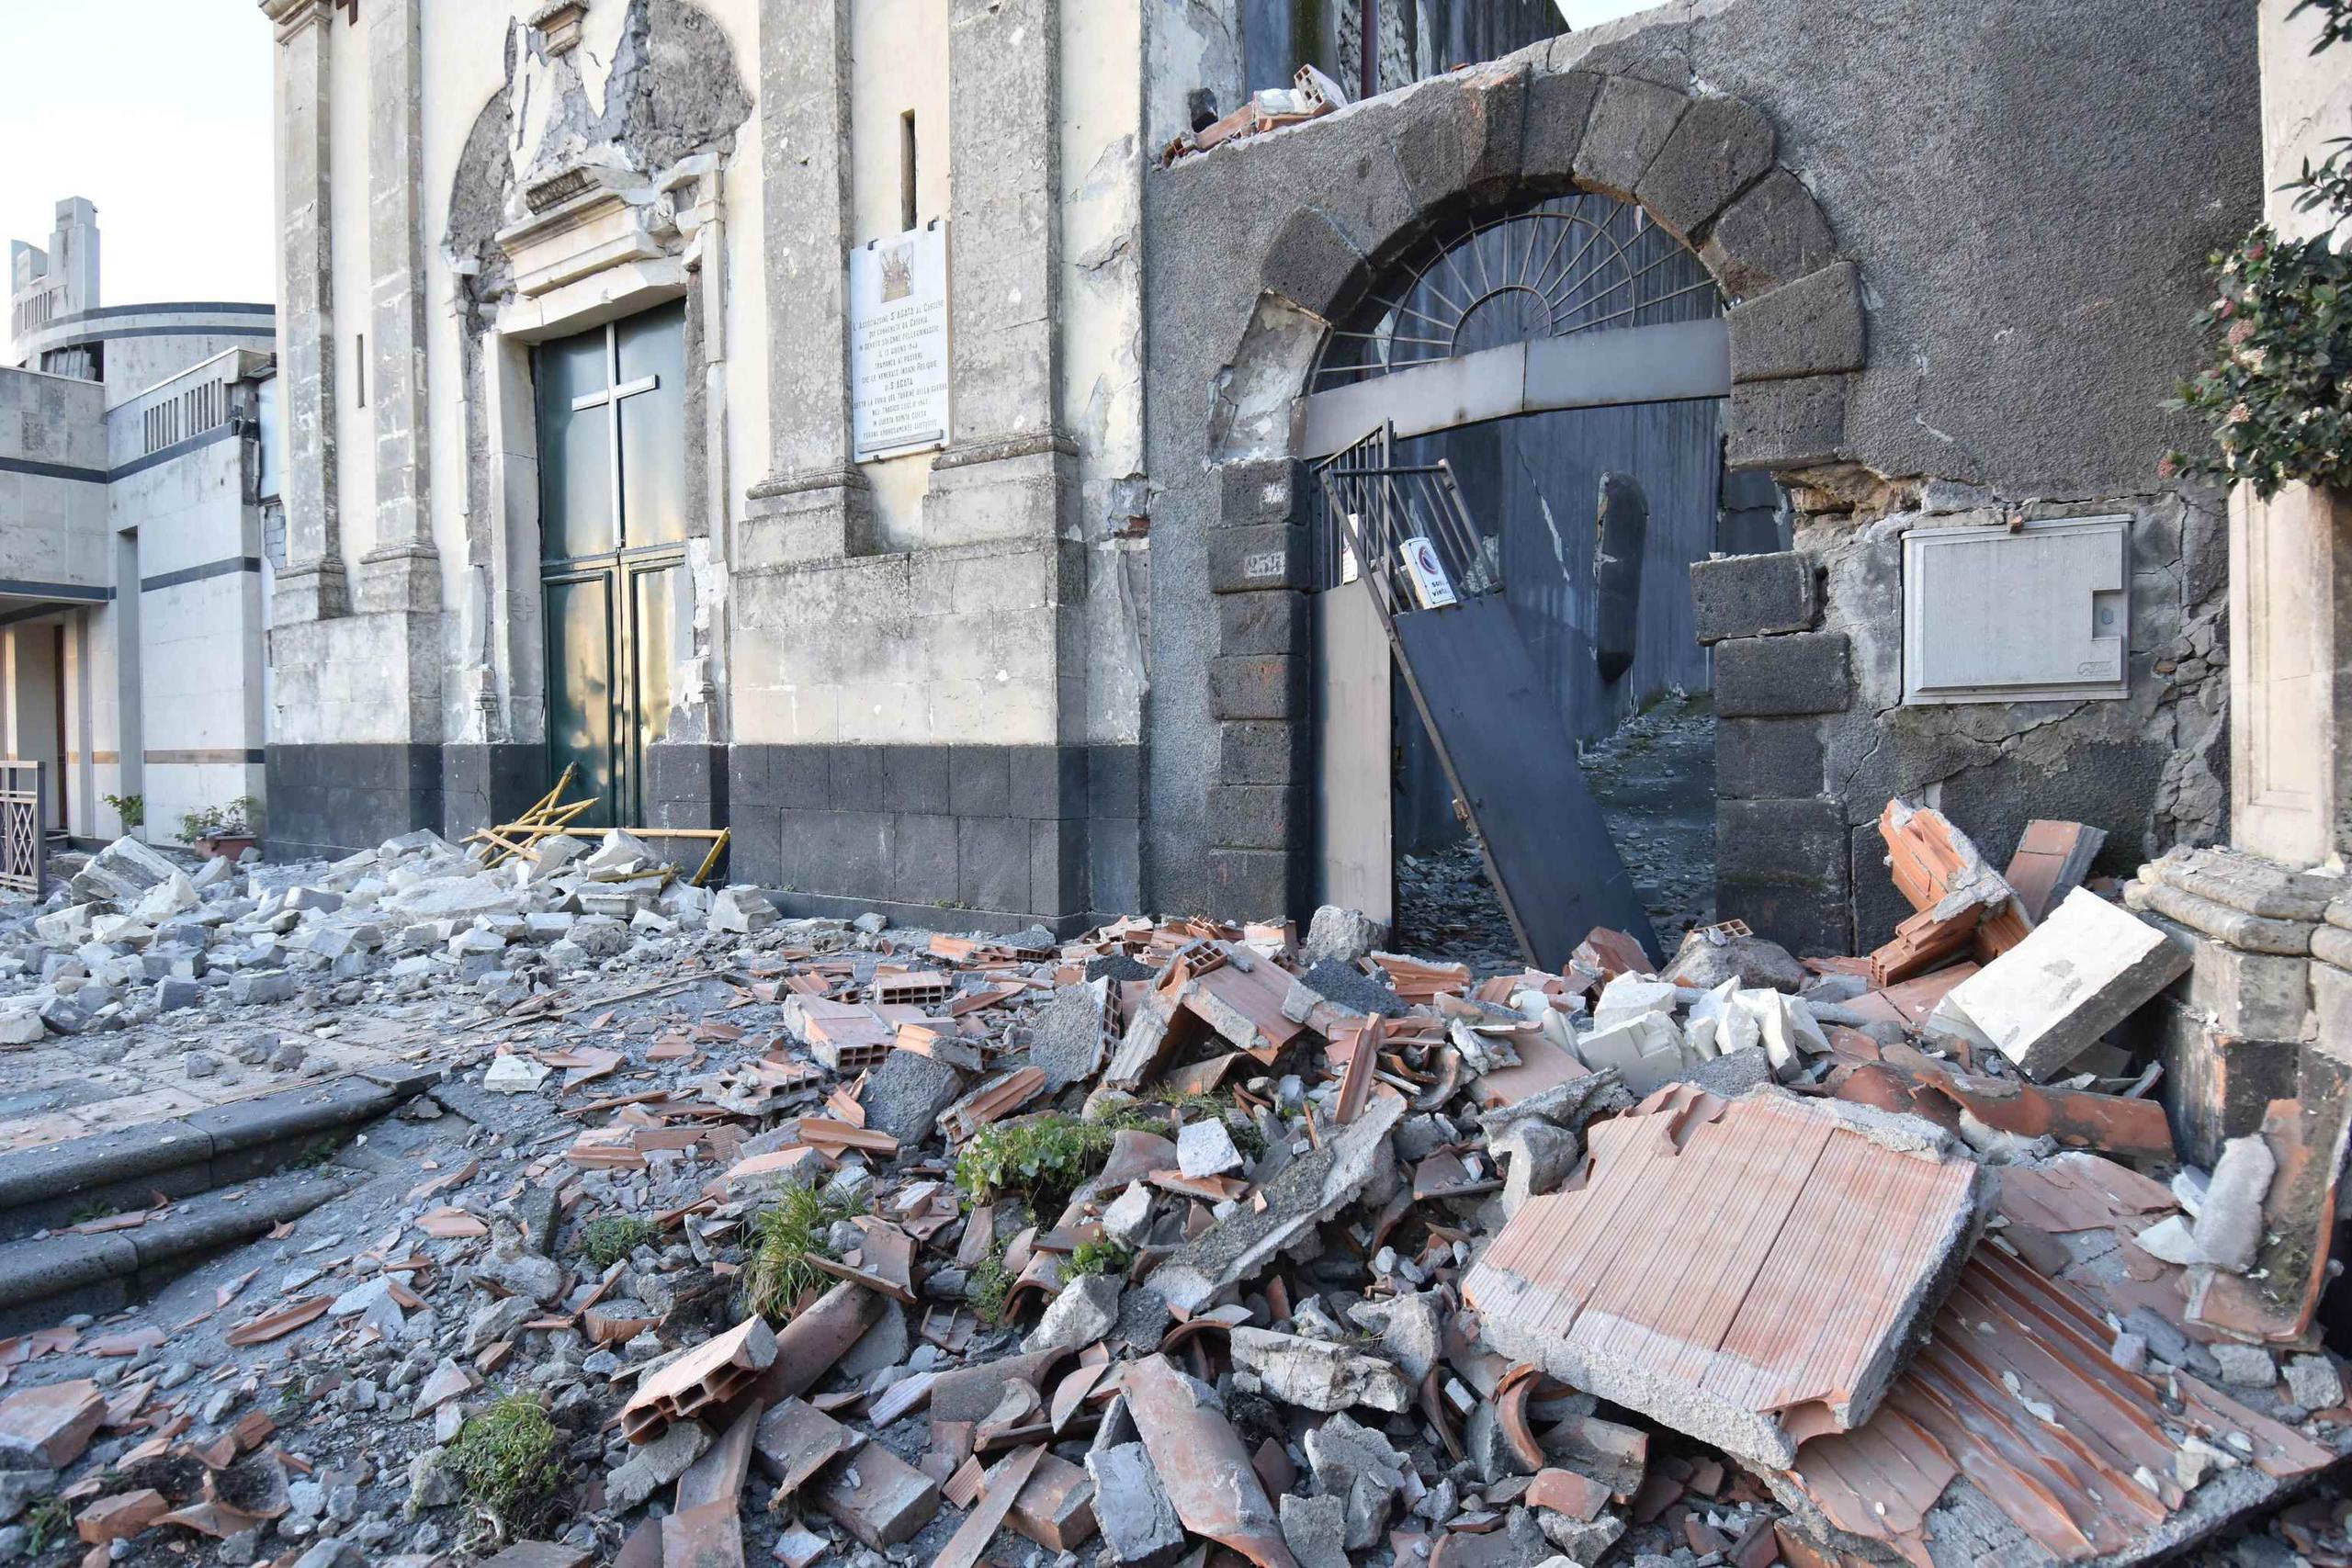 El sismo tuvo como epicentro las localidades de Viagrande y Trecastagni. (Orietta Scardino / ANSA vía AP)